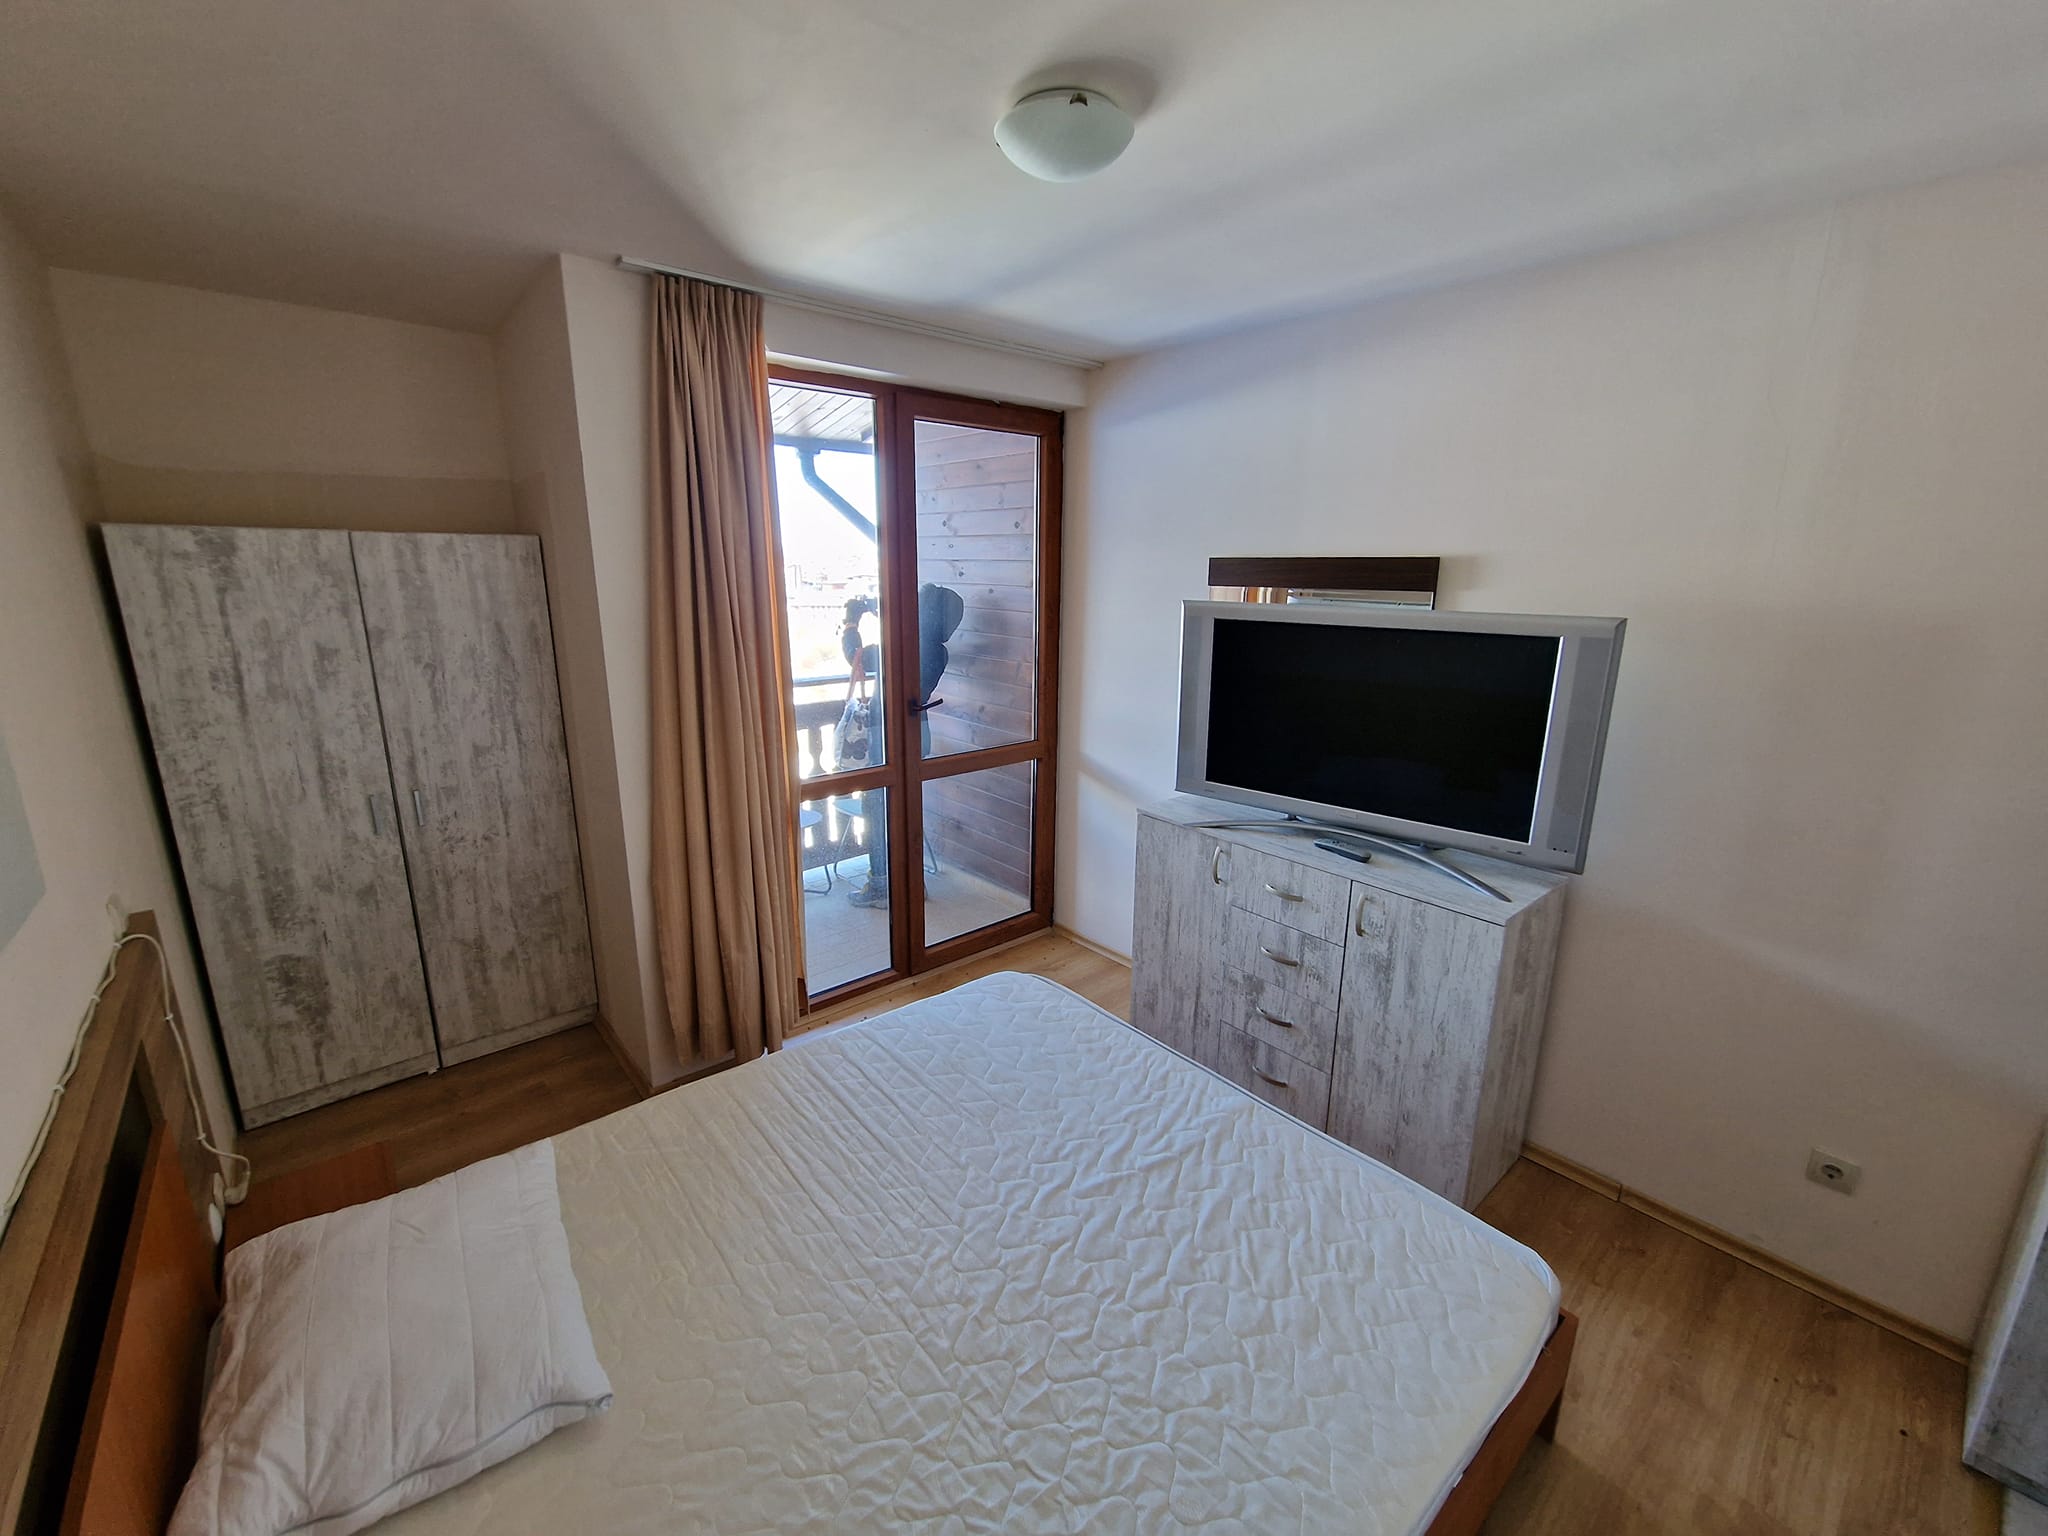 Panorama Resort: студию (тип гостиничного номера) для продажи в Банско